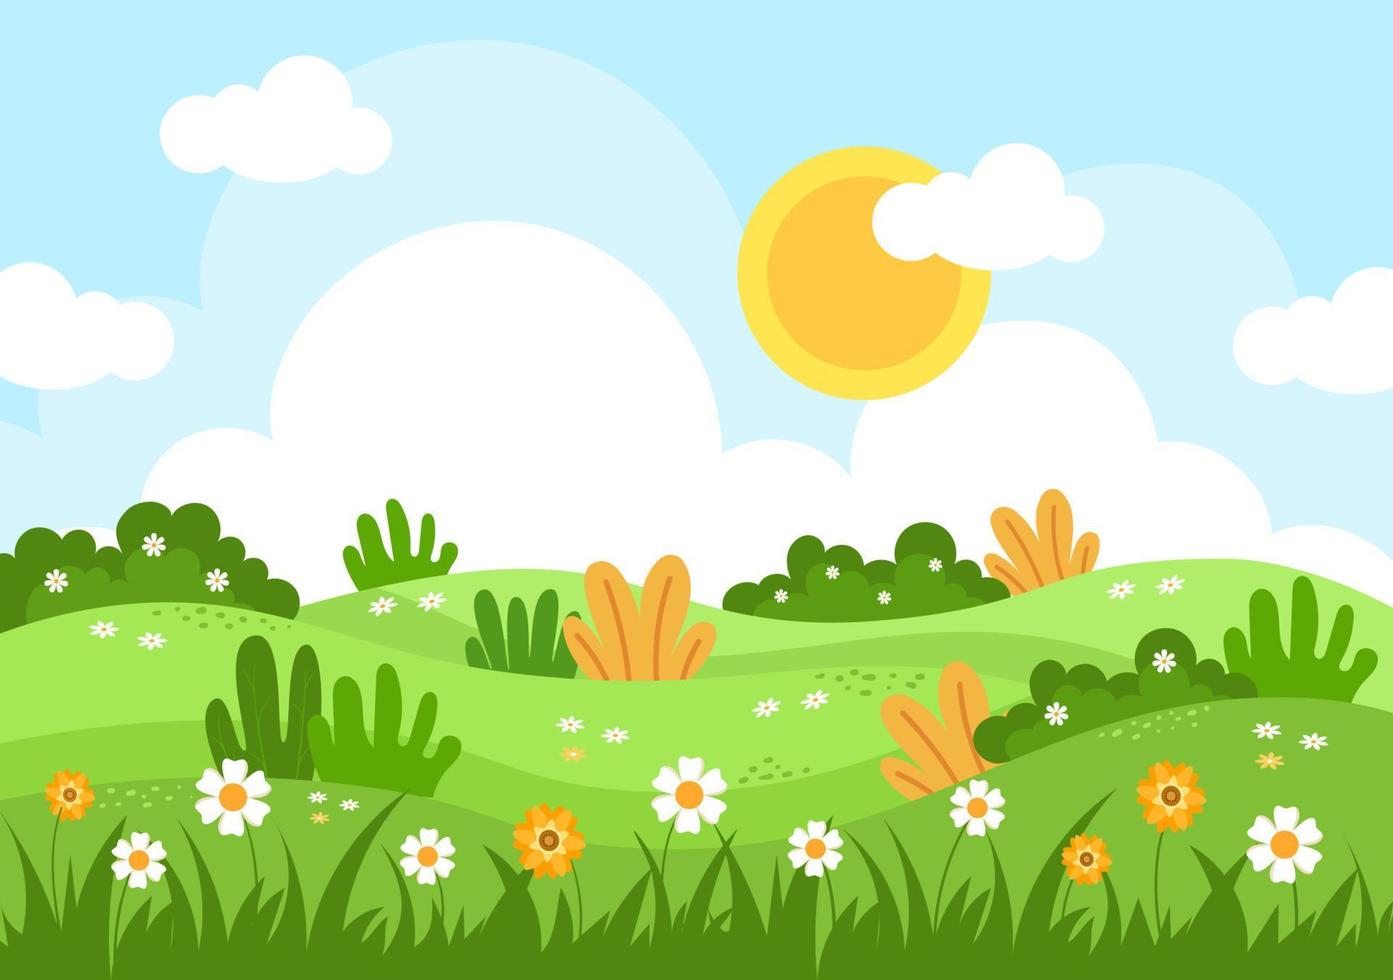 vårtid landskap bakgrund med blommor säsong, regnbåge och växt för kampanjer, tidningar, reklam eller webbplatser. natur vektor illustration